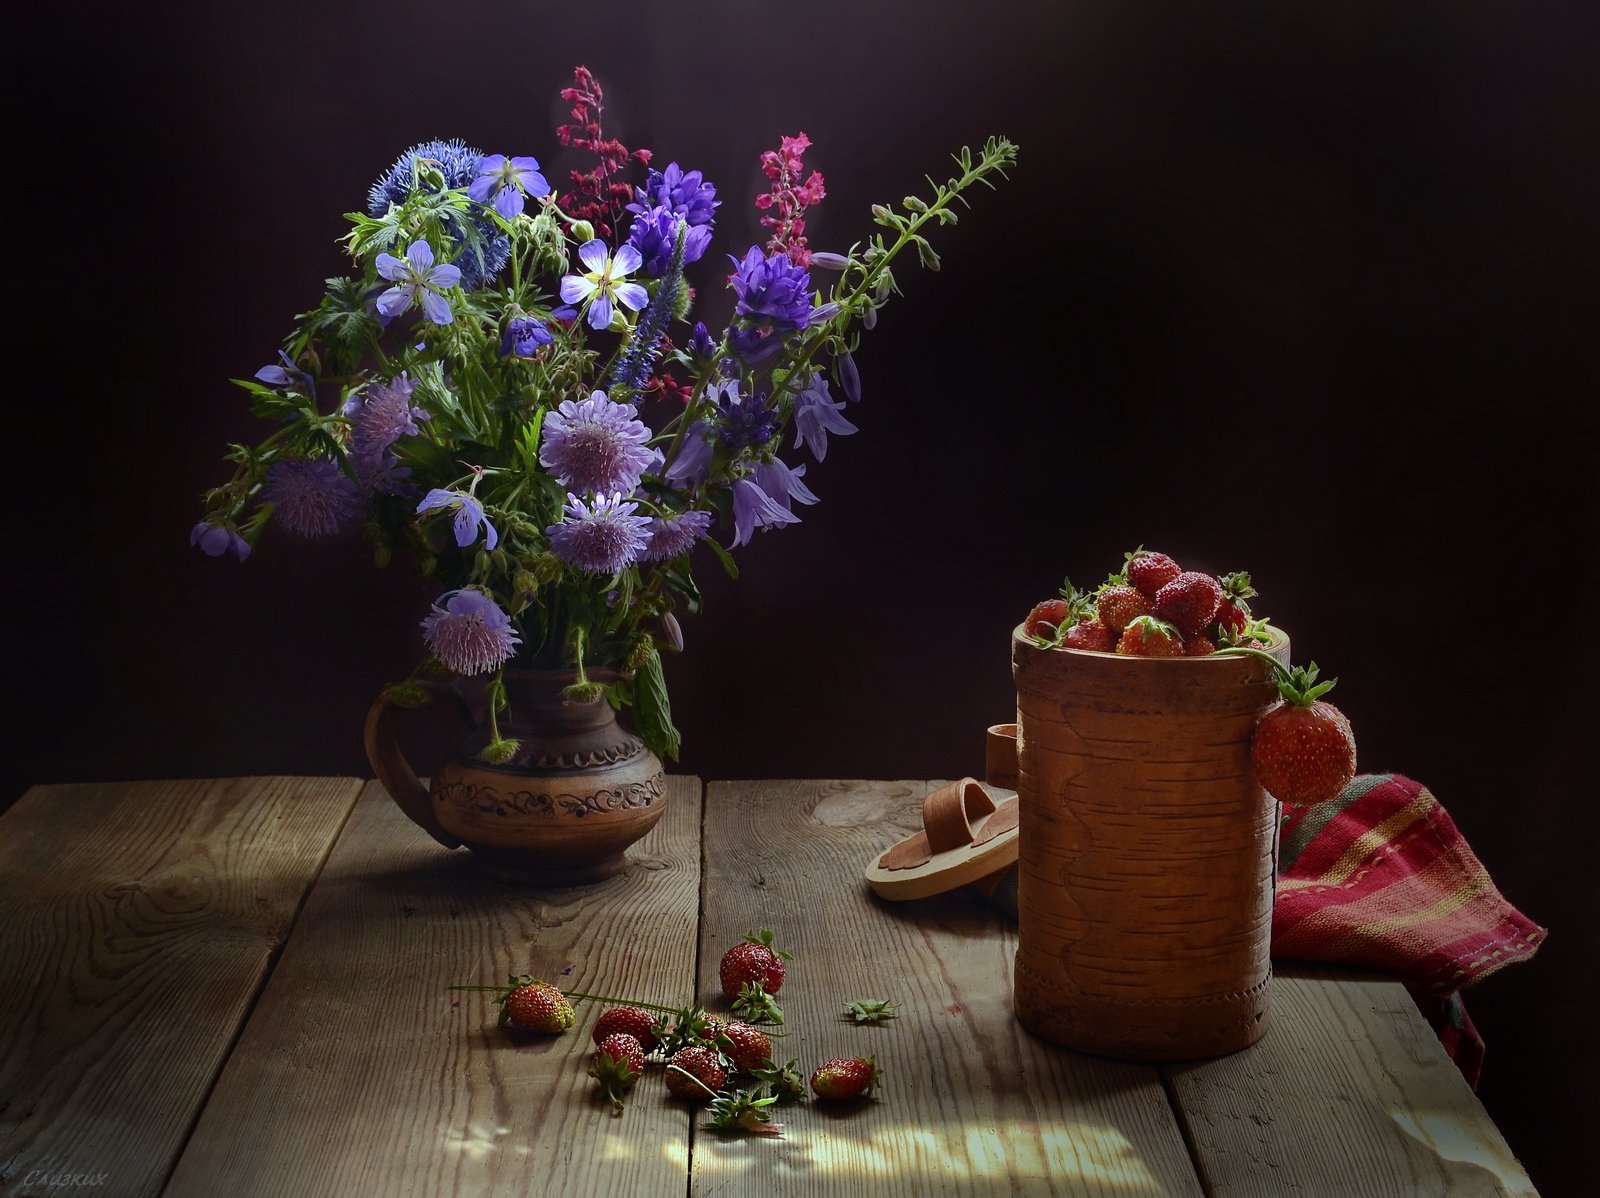 букет,цветы,лето,аромат,ягода,туесок, молочник,керамика, клубника,тепло,вкус, Инаида